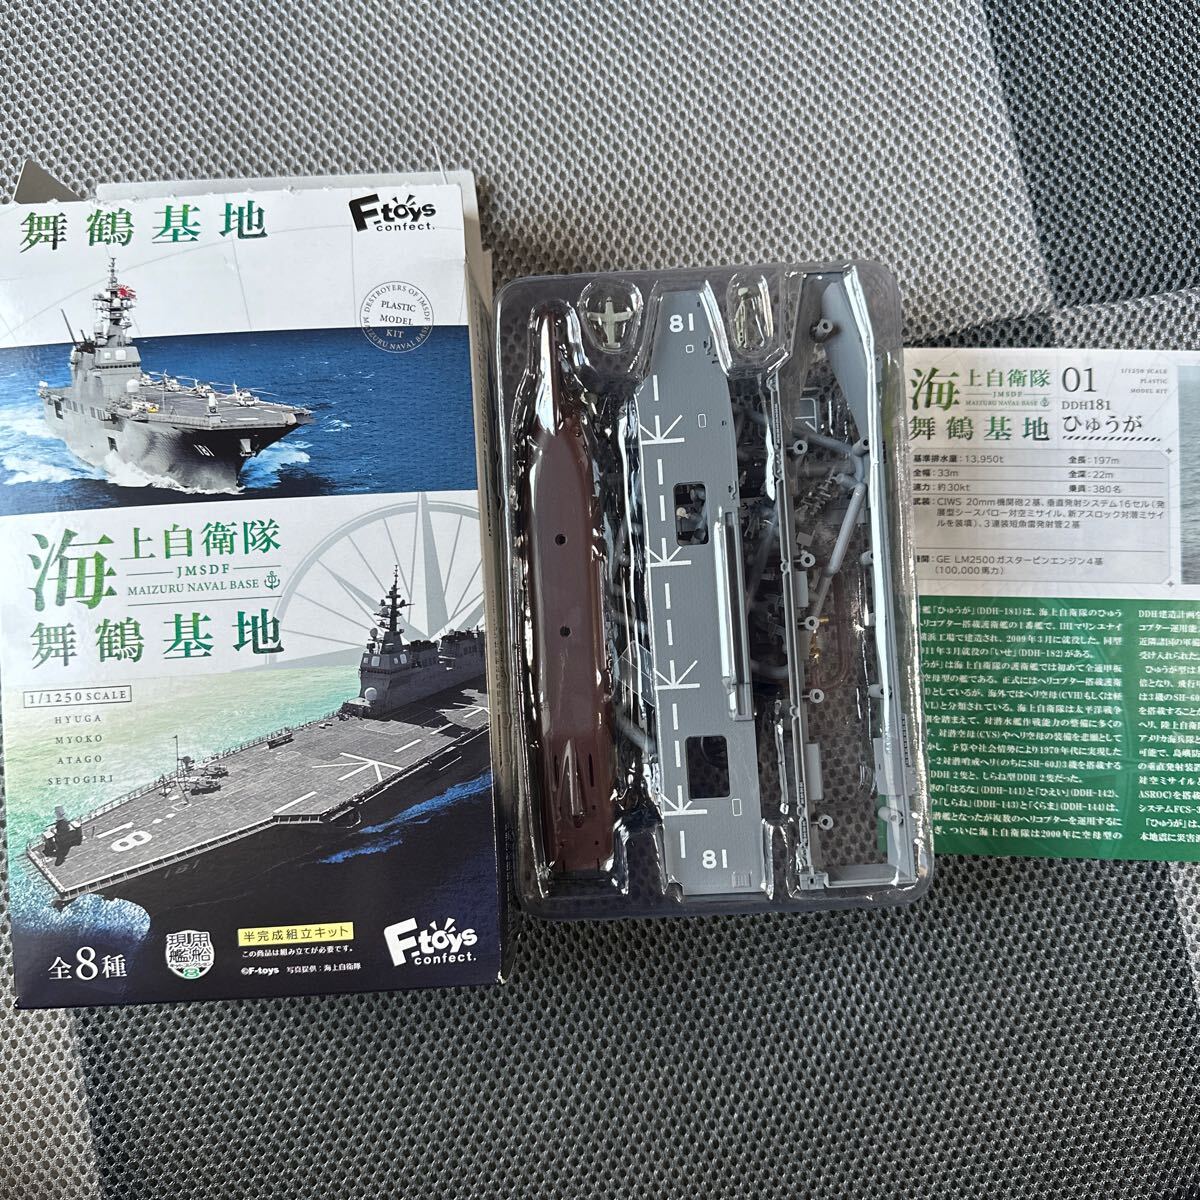 海上自衛隊 舞鶴基地 1/1250 スケール 01 ひゅうがA フルハルver. 現用艦船キットコレクション エフトイズ F-toysの画像1